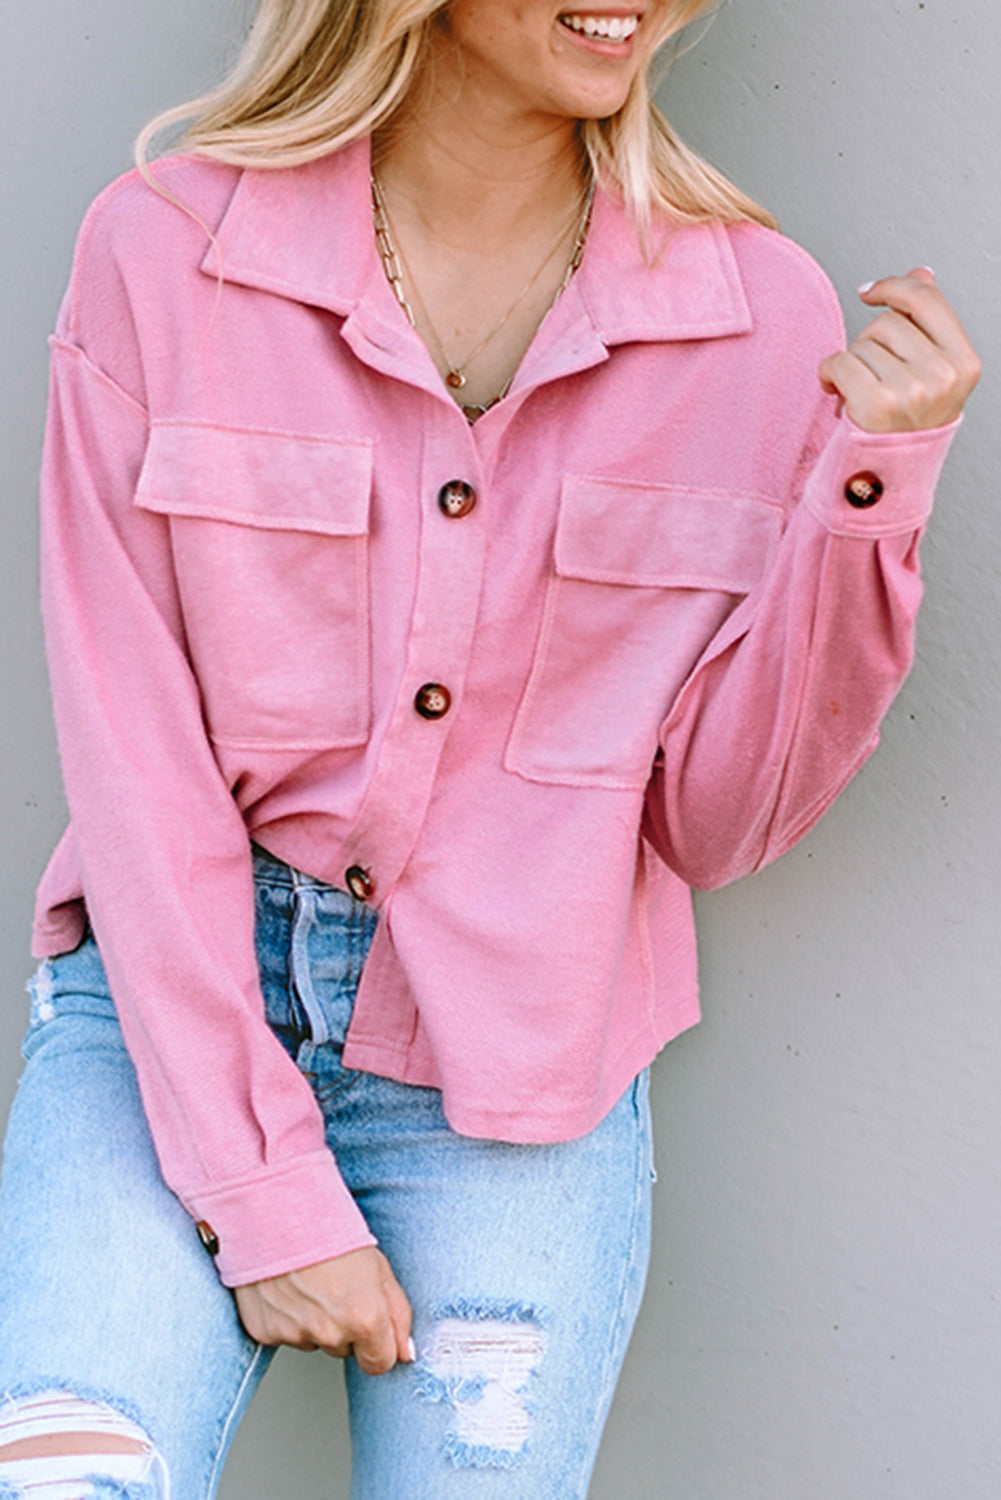 Giacca camicia rosa con tasche sul colletto risvoltato